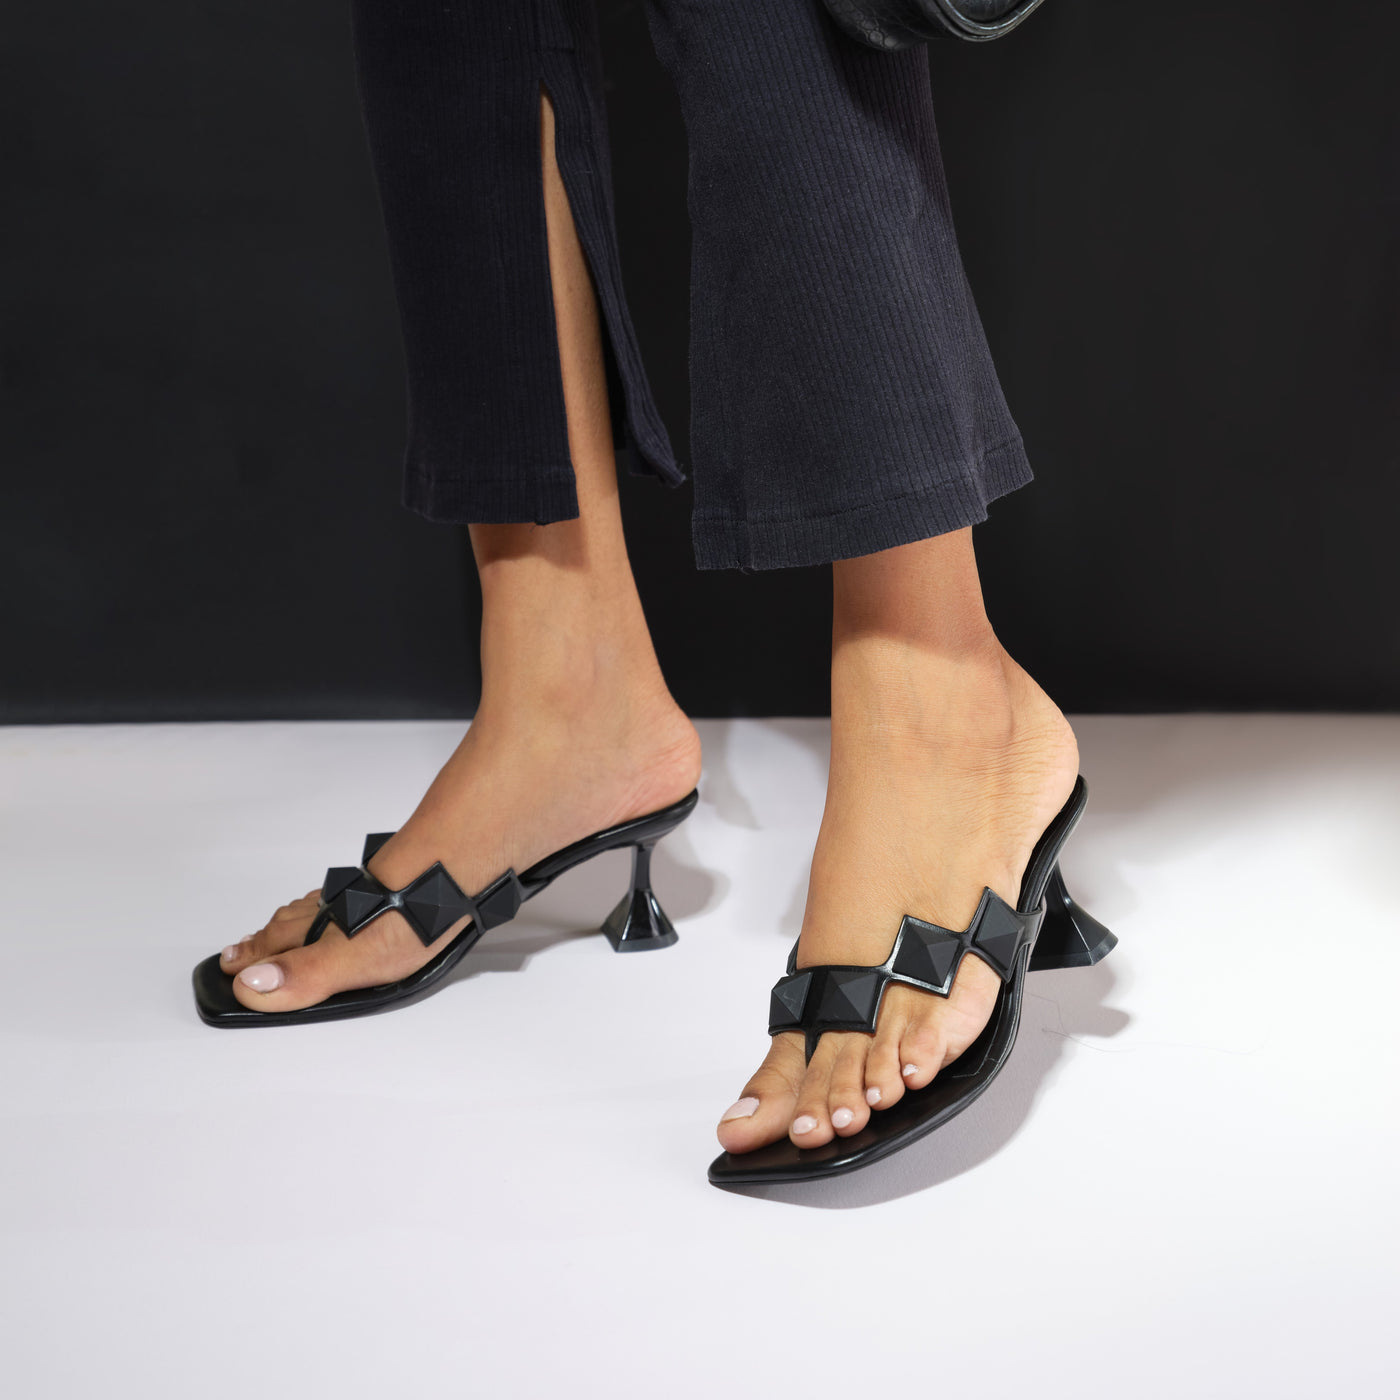 Black Studded Heels for Women